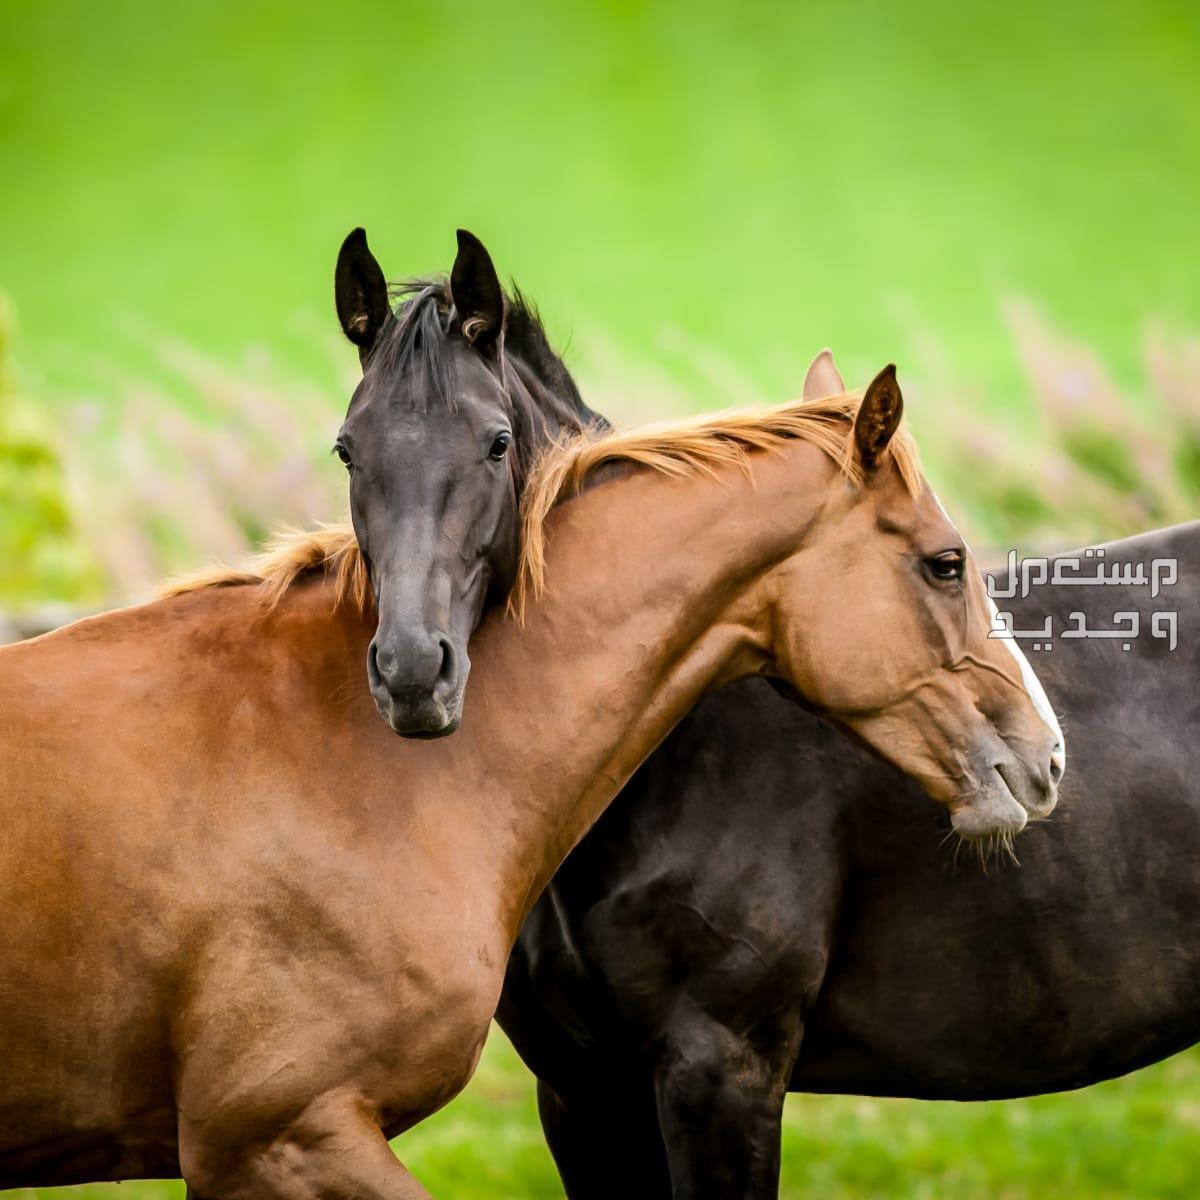 لمحبي الخيول تعرف على أهم المعلومات التي تخص زواج خيول في السعودية خيول رائعة